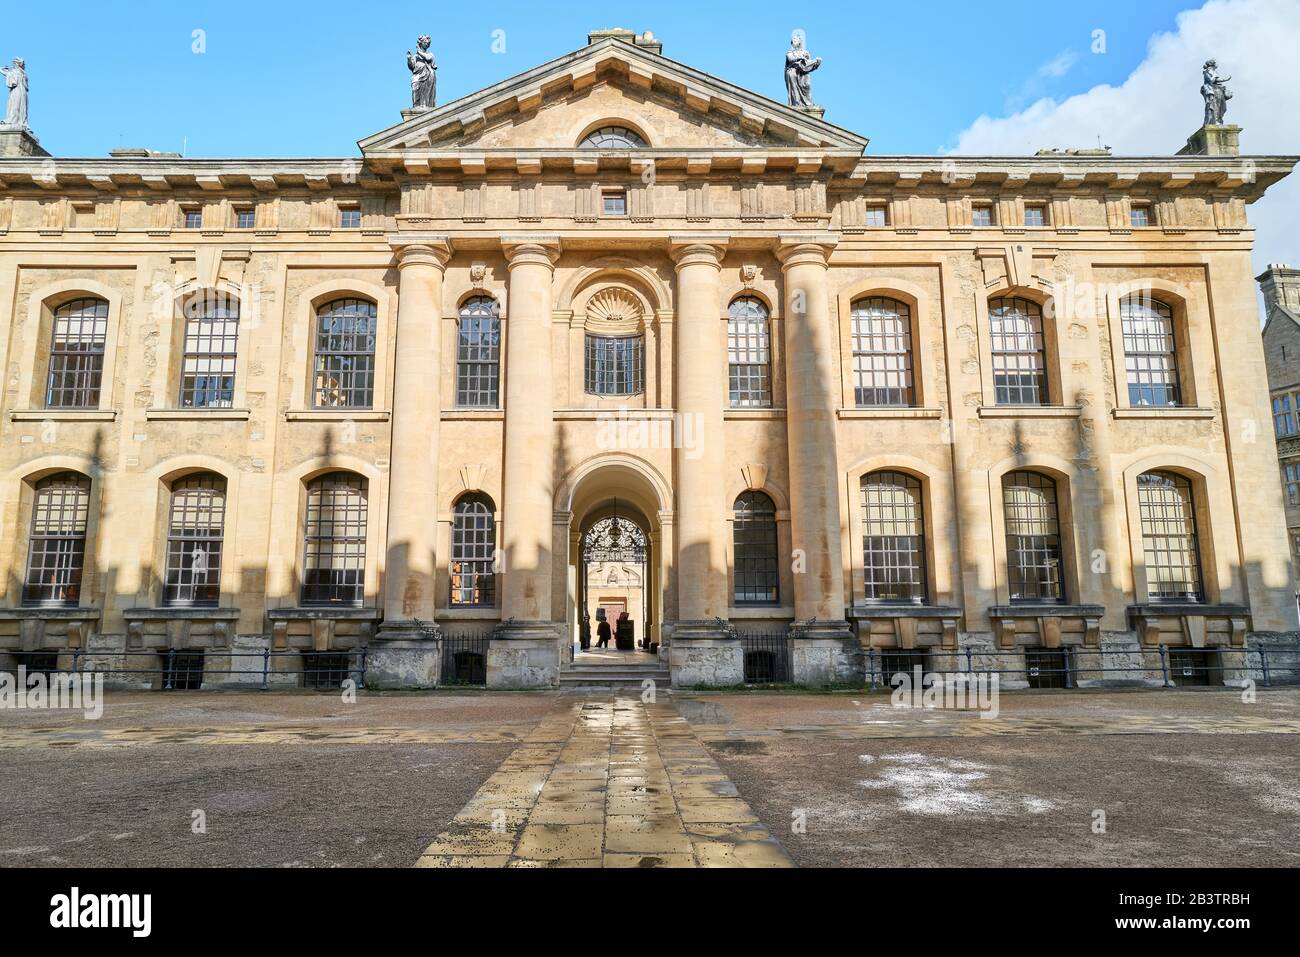 L'edificio Clarendon della biblioteca Bodleiana all'università di Oxford, Inghilterra. Foto Stock